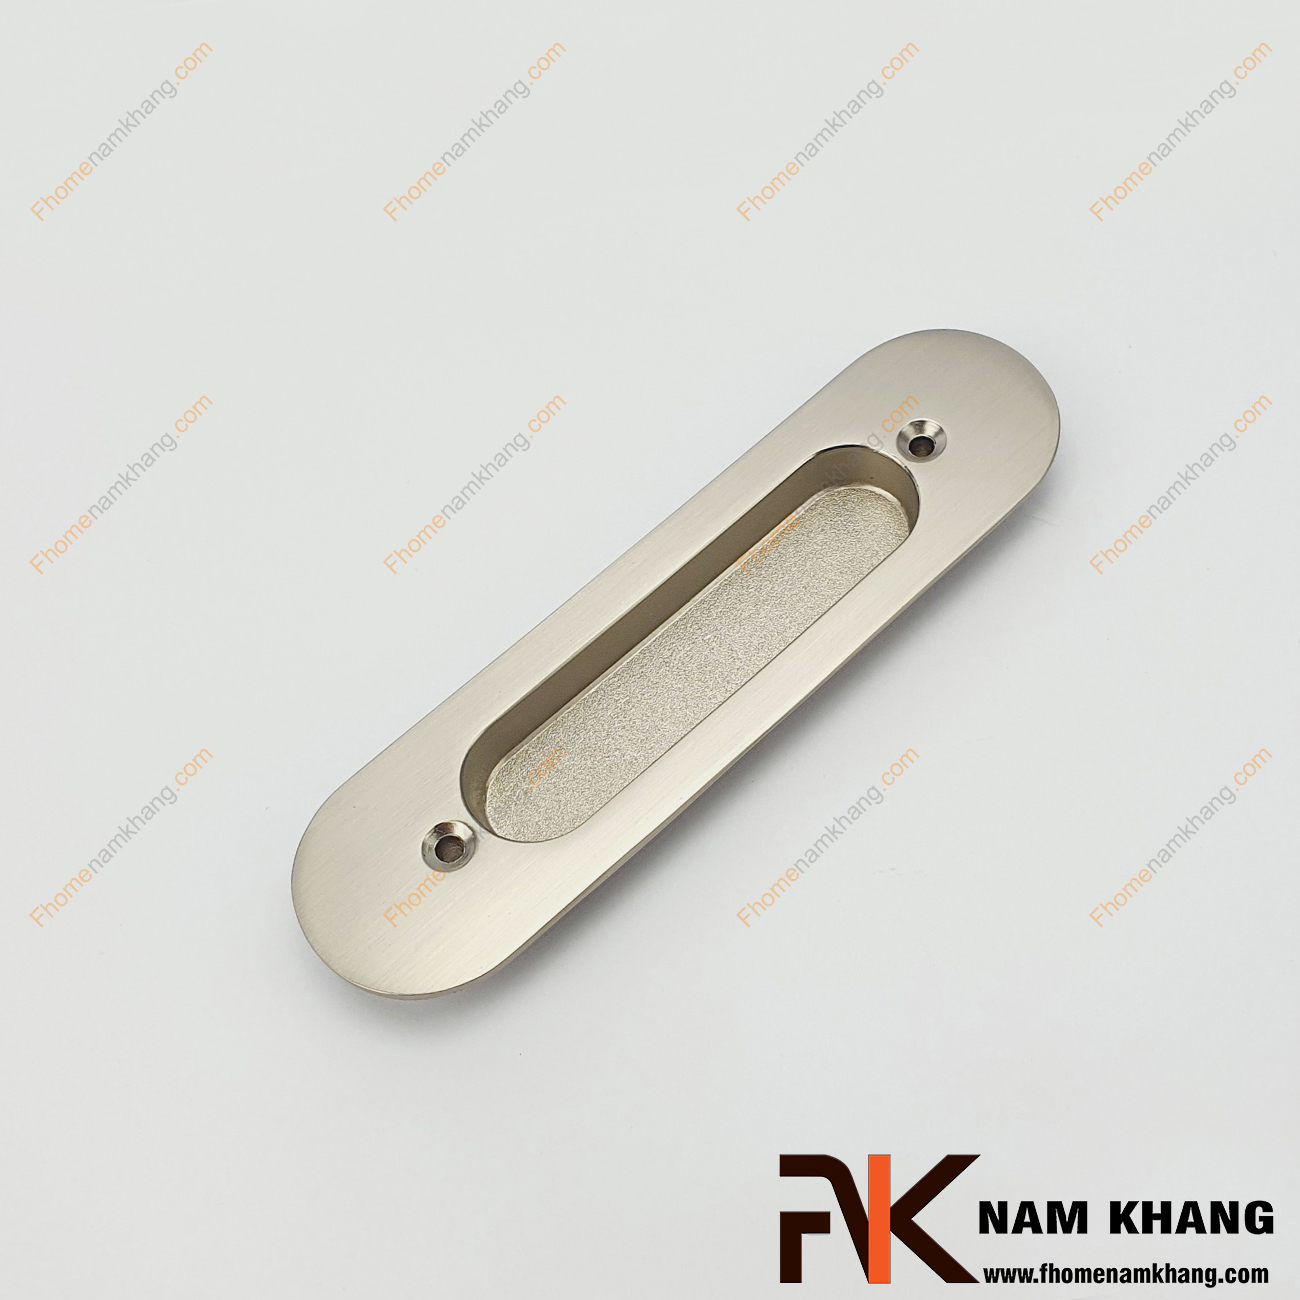 Tay âm cửa lùa NK061L-B là dòng tay nắm tủ dạng âm dùng chính cho dòng cửa lùa. Sản phẩm tay nắm này được bắt vít trực tiếp từ bên ngoài.